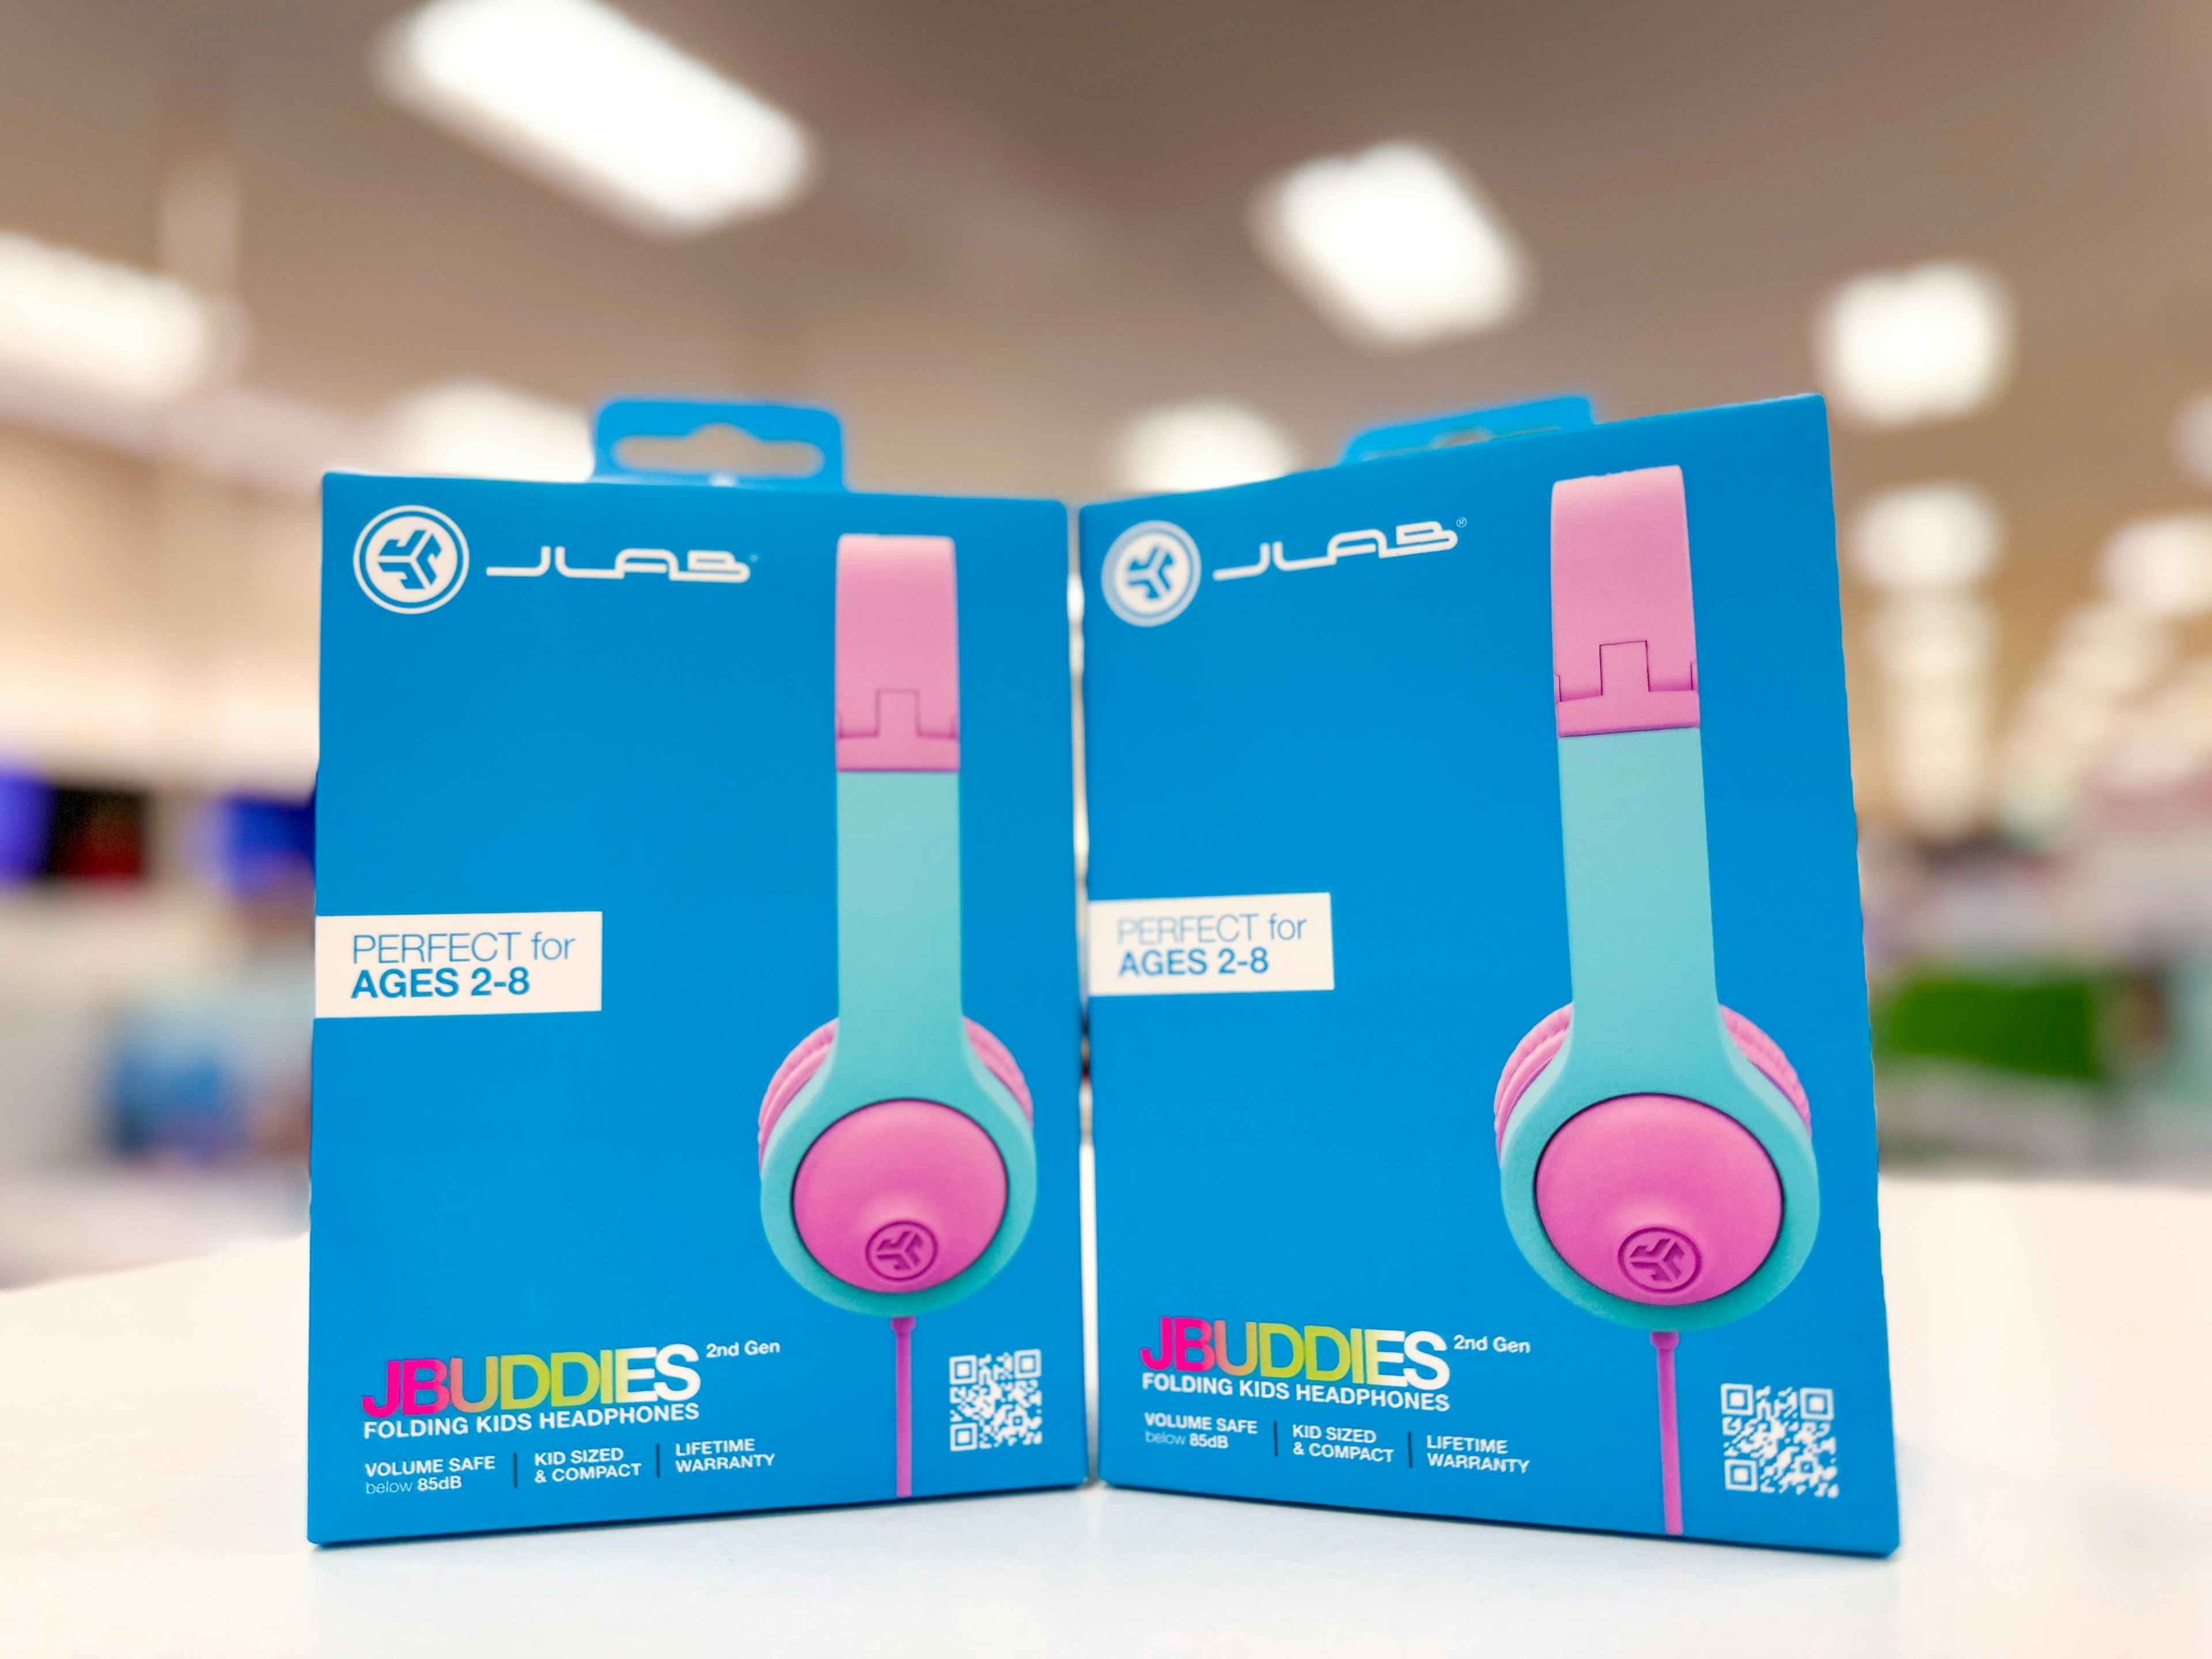 Target-Jlab-Jbuddies-kids-headphones-2